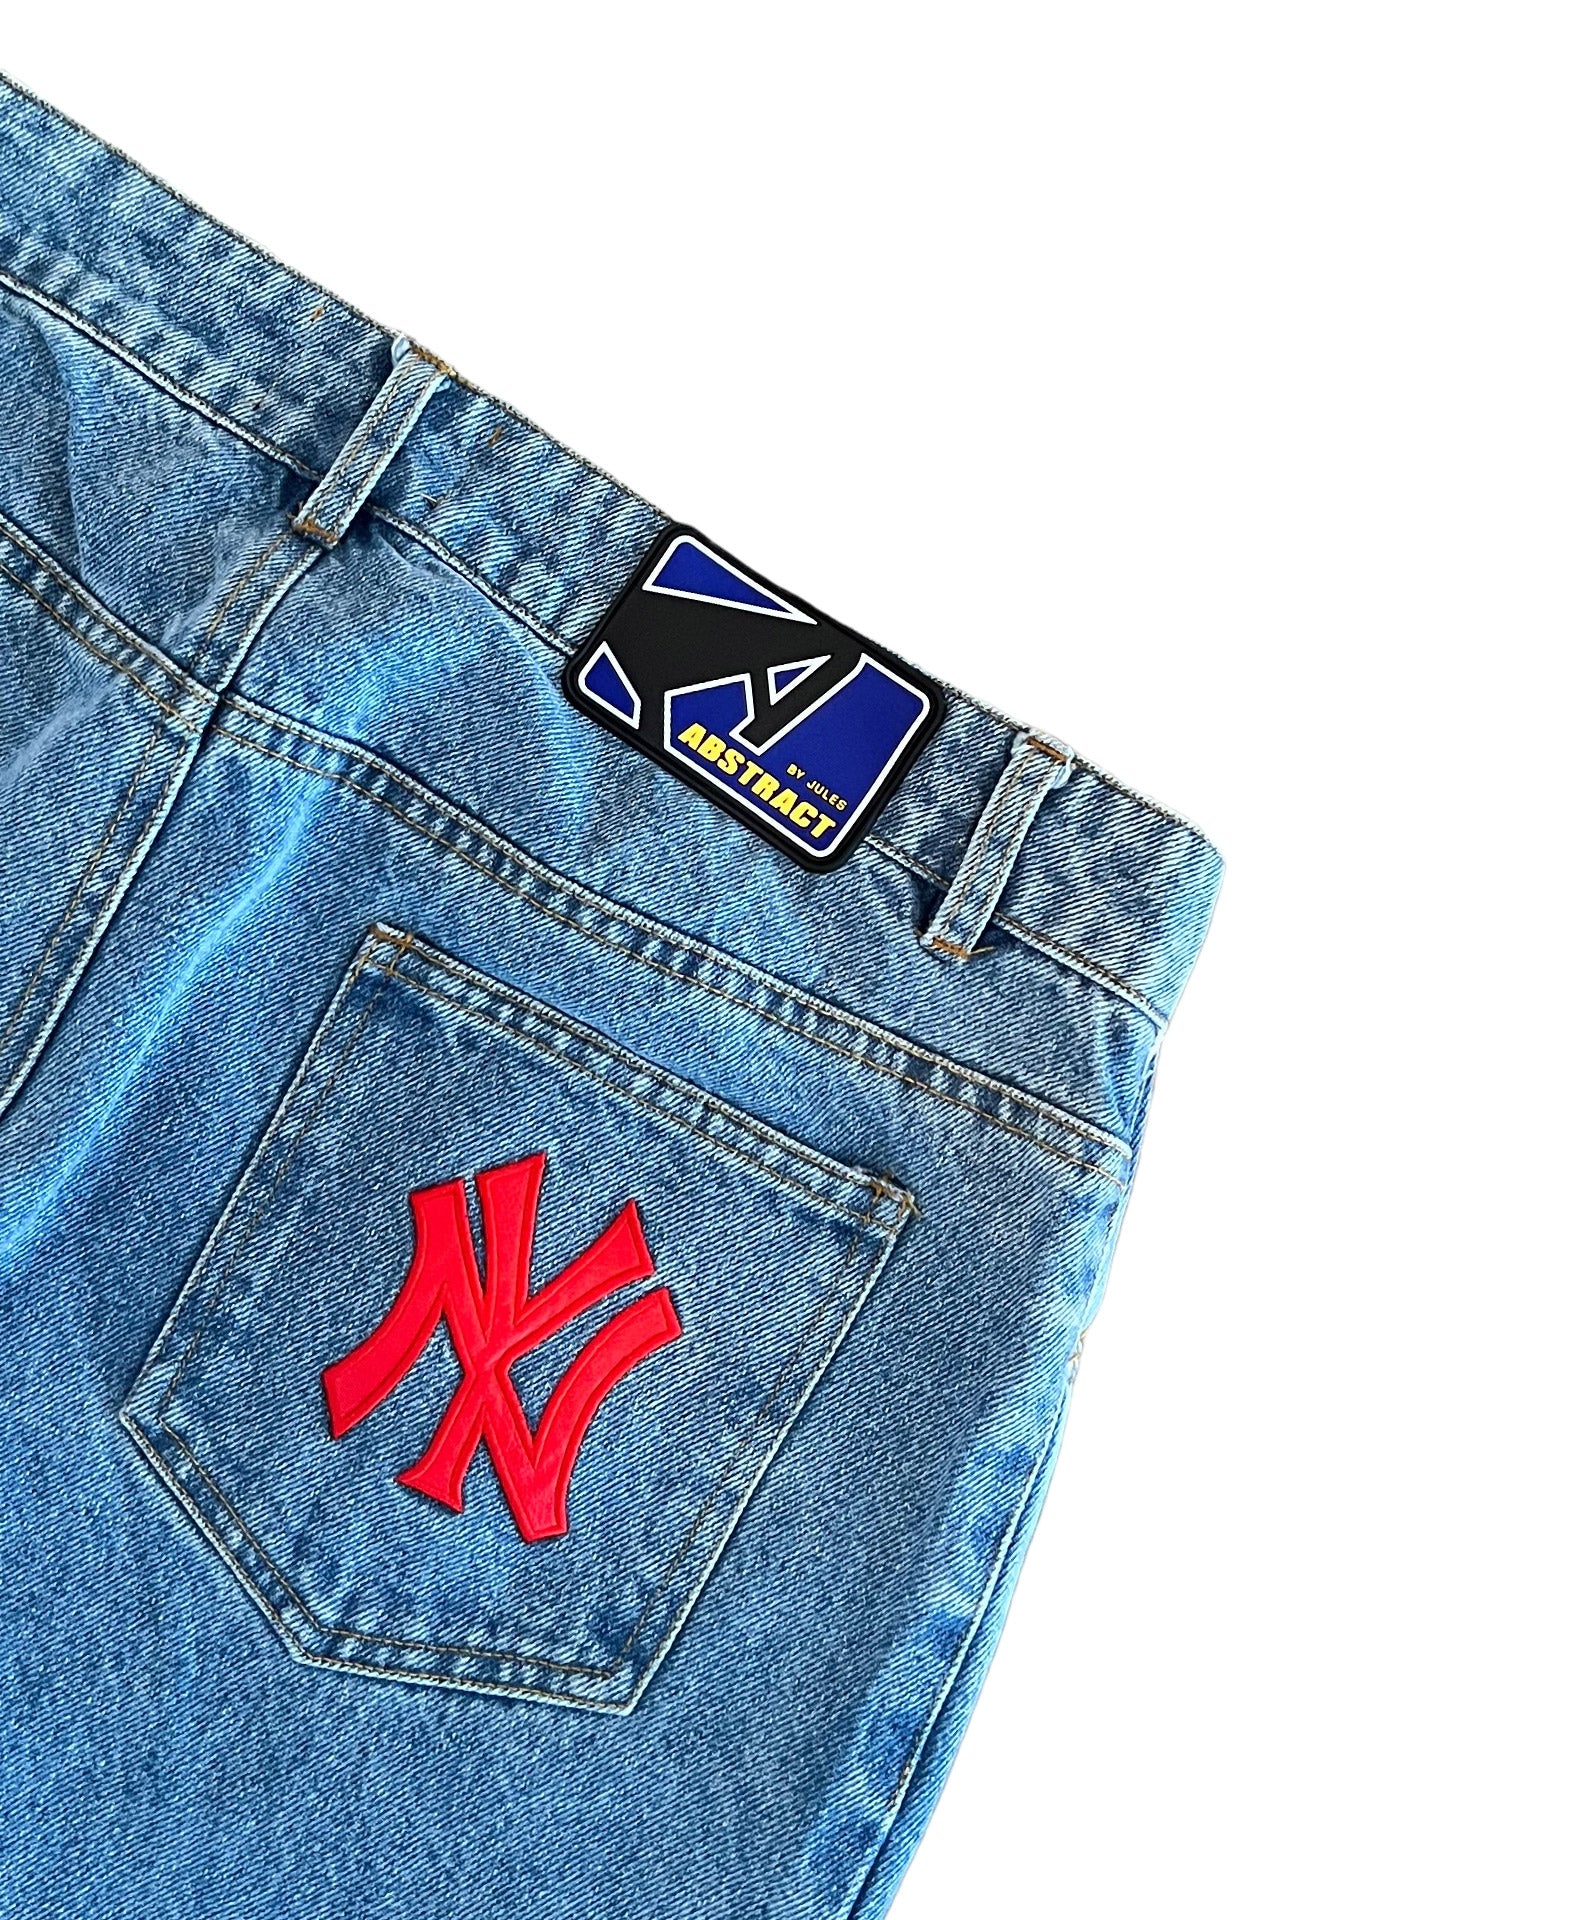 NY Patch Jeans - Blue